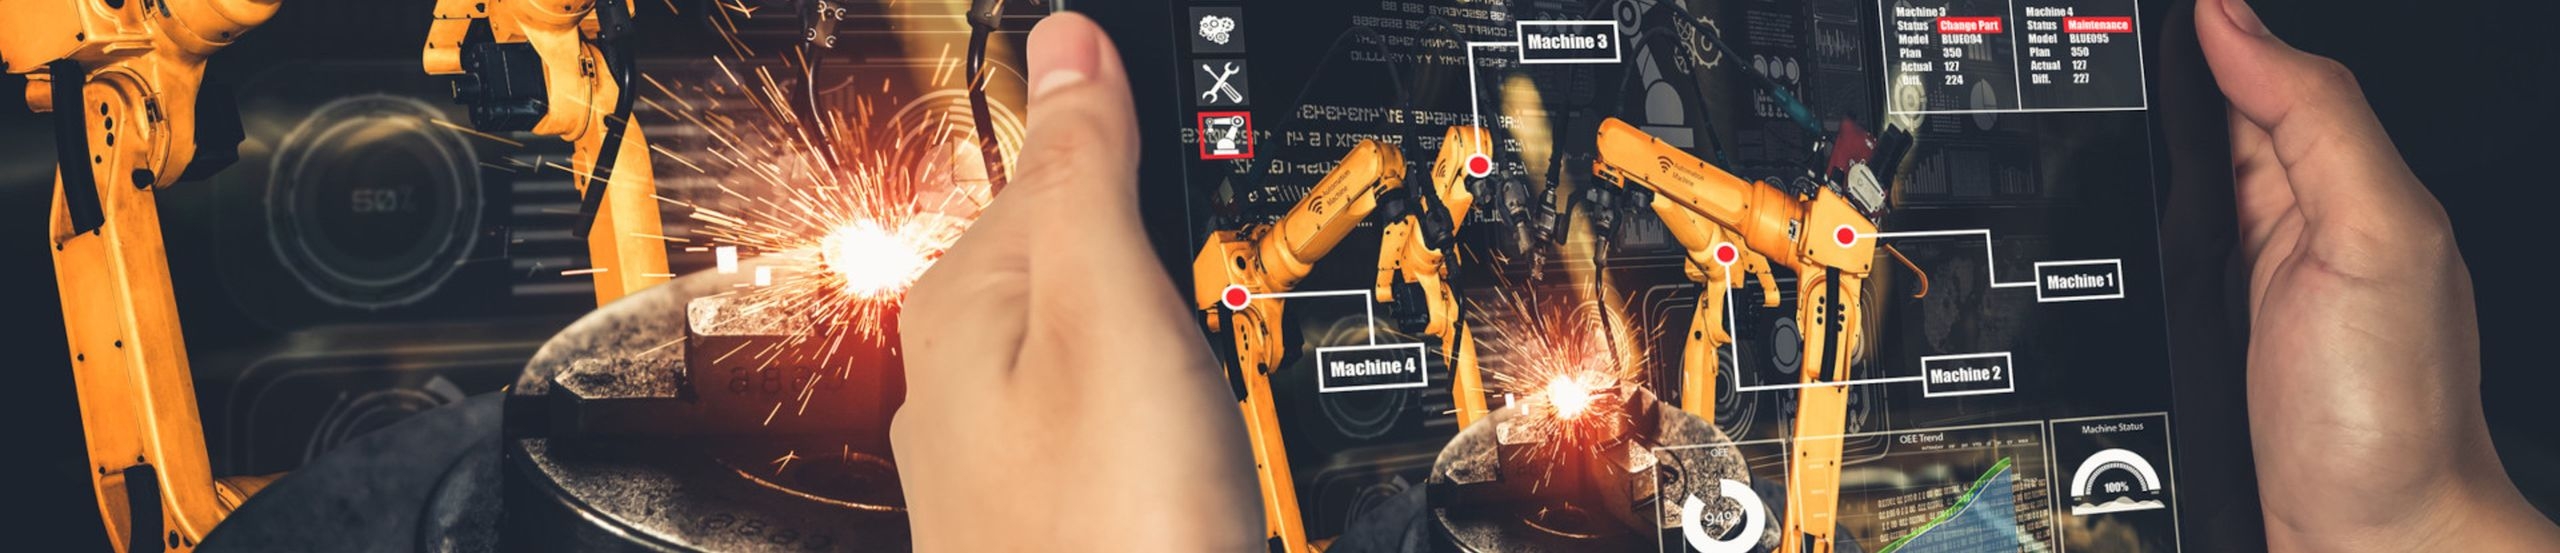 Hände halten ein Tablet mit der Darstellung eines gelben Industrieroboters und Daten vor einen Industrieroboter. Im Hintergrund sind digitale Darstellungen zu sehen